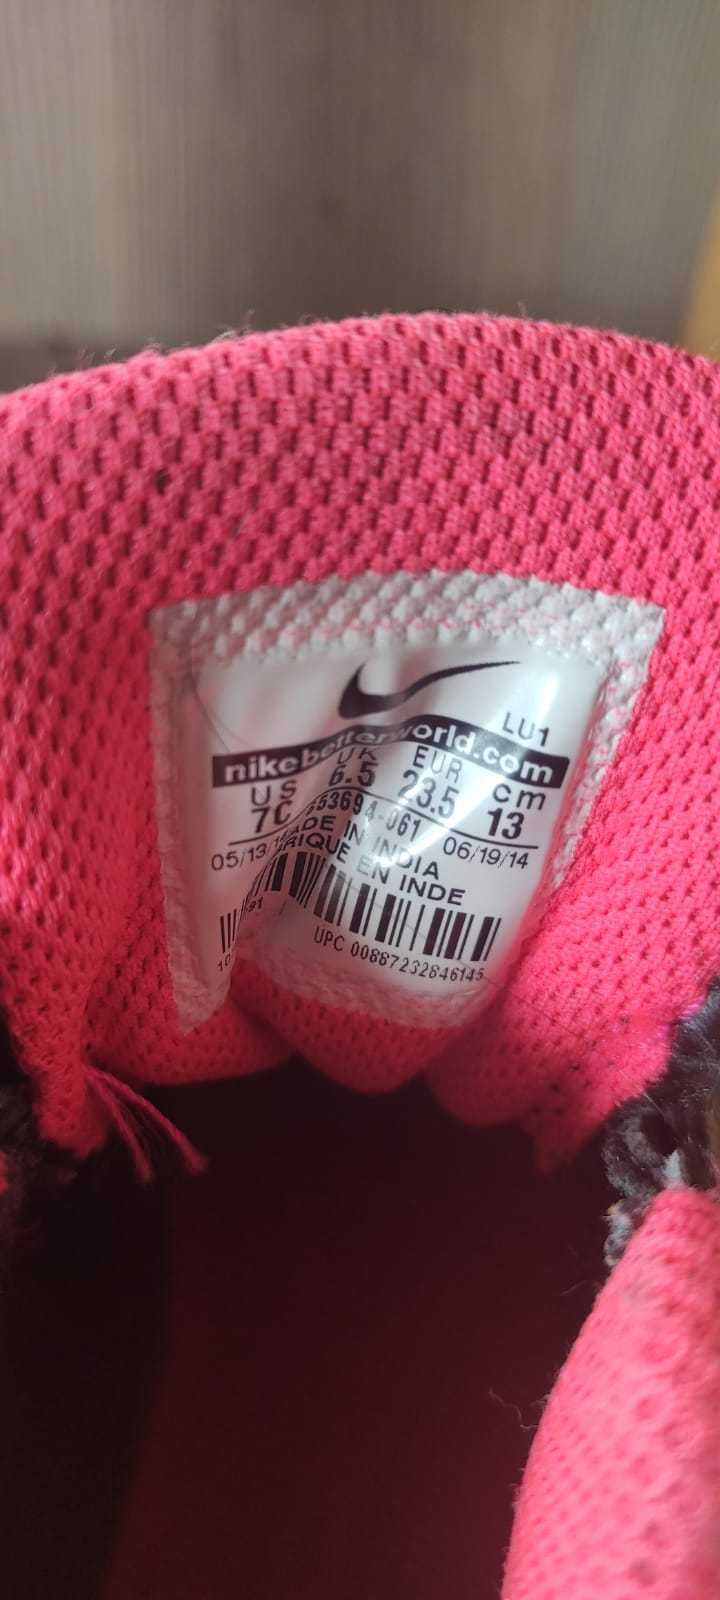 Vând ghetuțe Nike Nr 23,5 pt copii